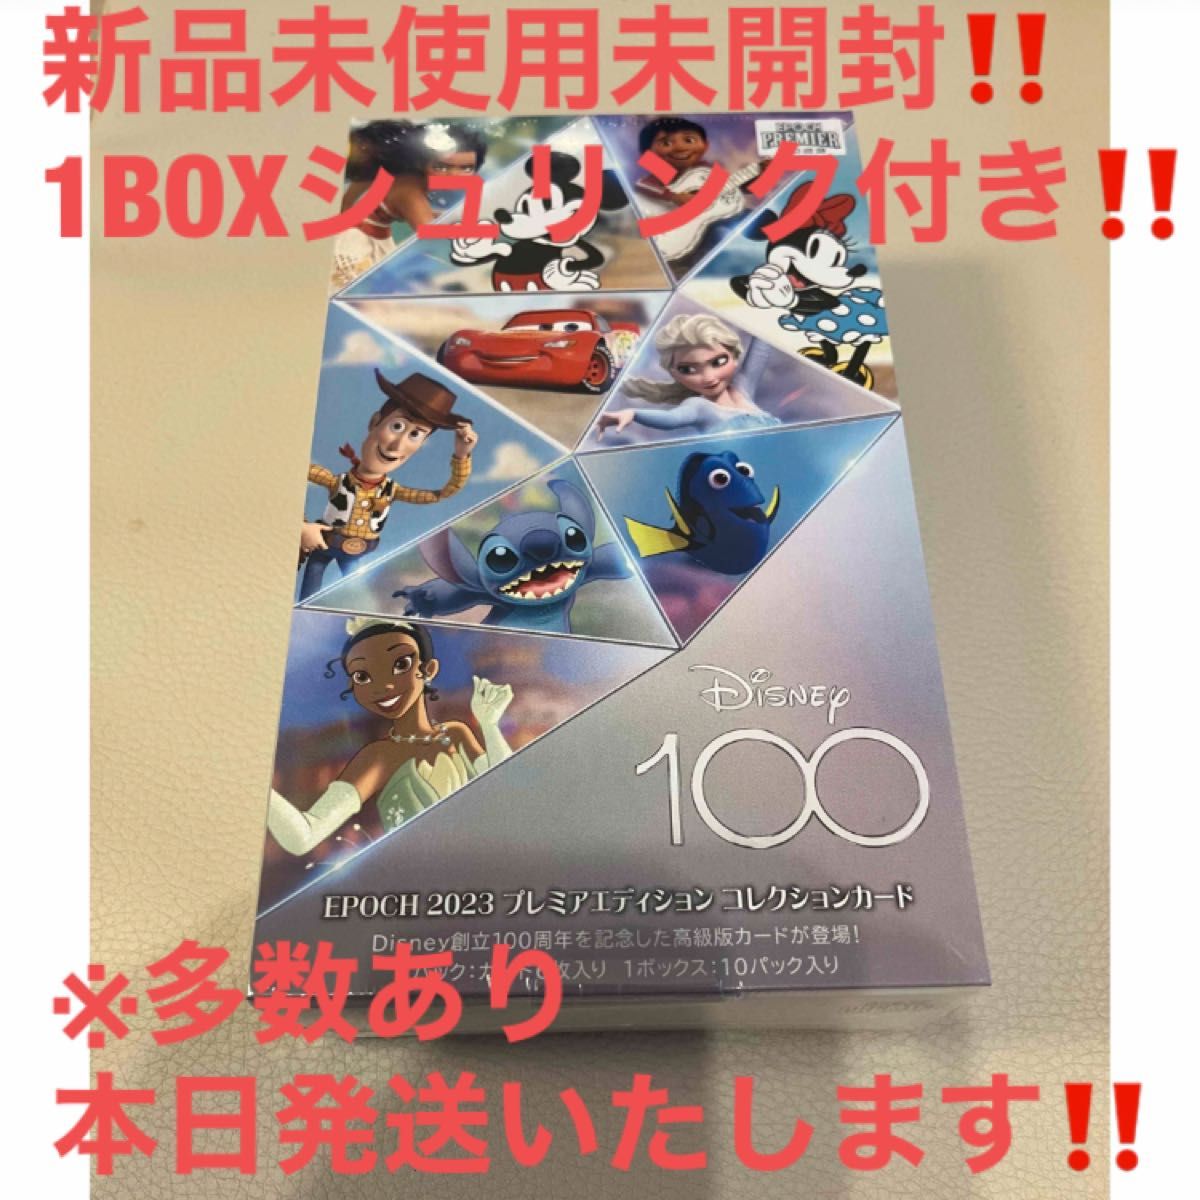 【新品未開封】Disney創立100周年 2023 EPOCH PREMIER EDITION 10パック入りBOX シュリンク付